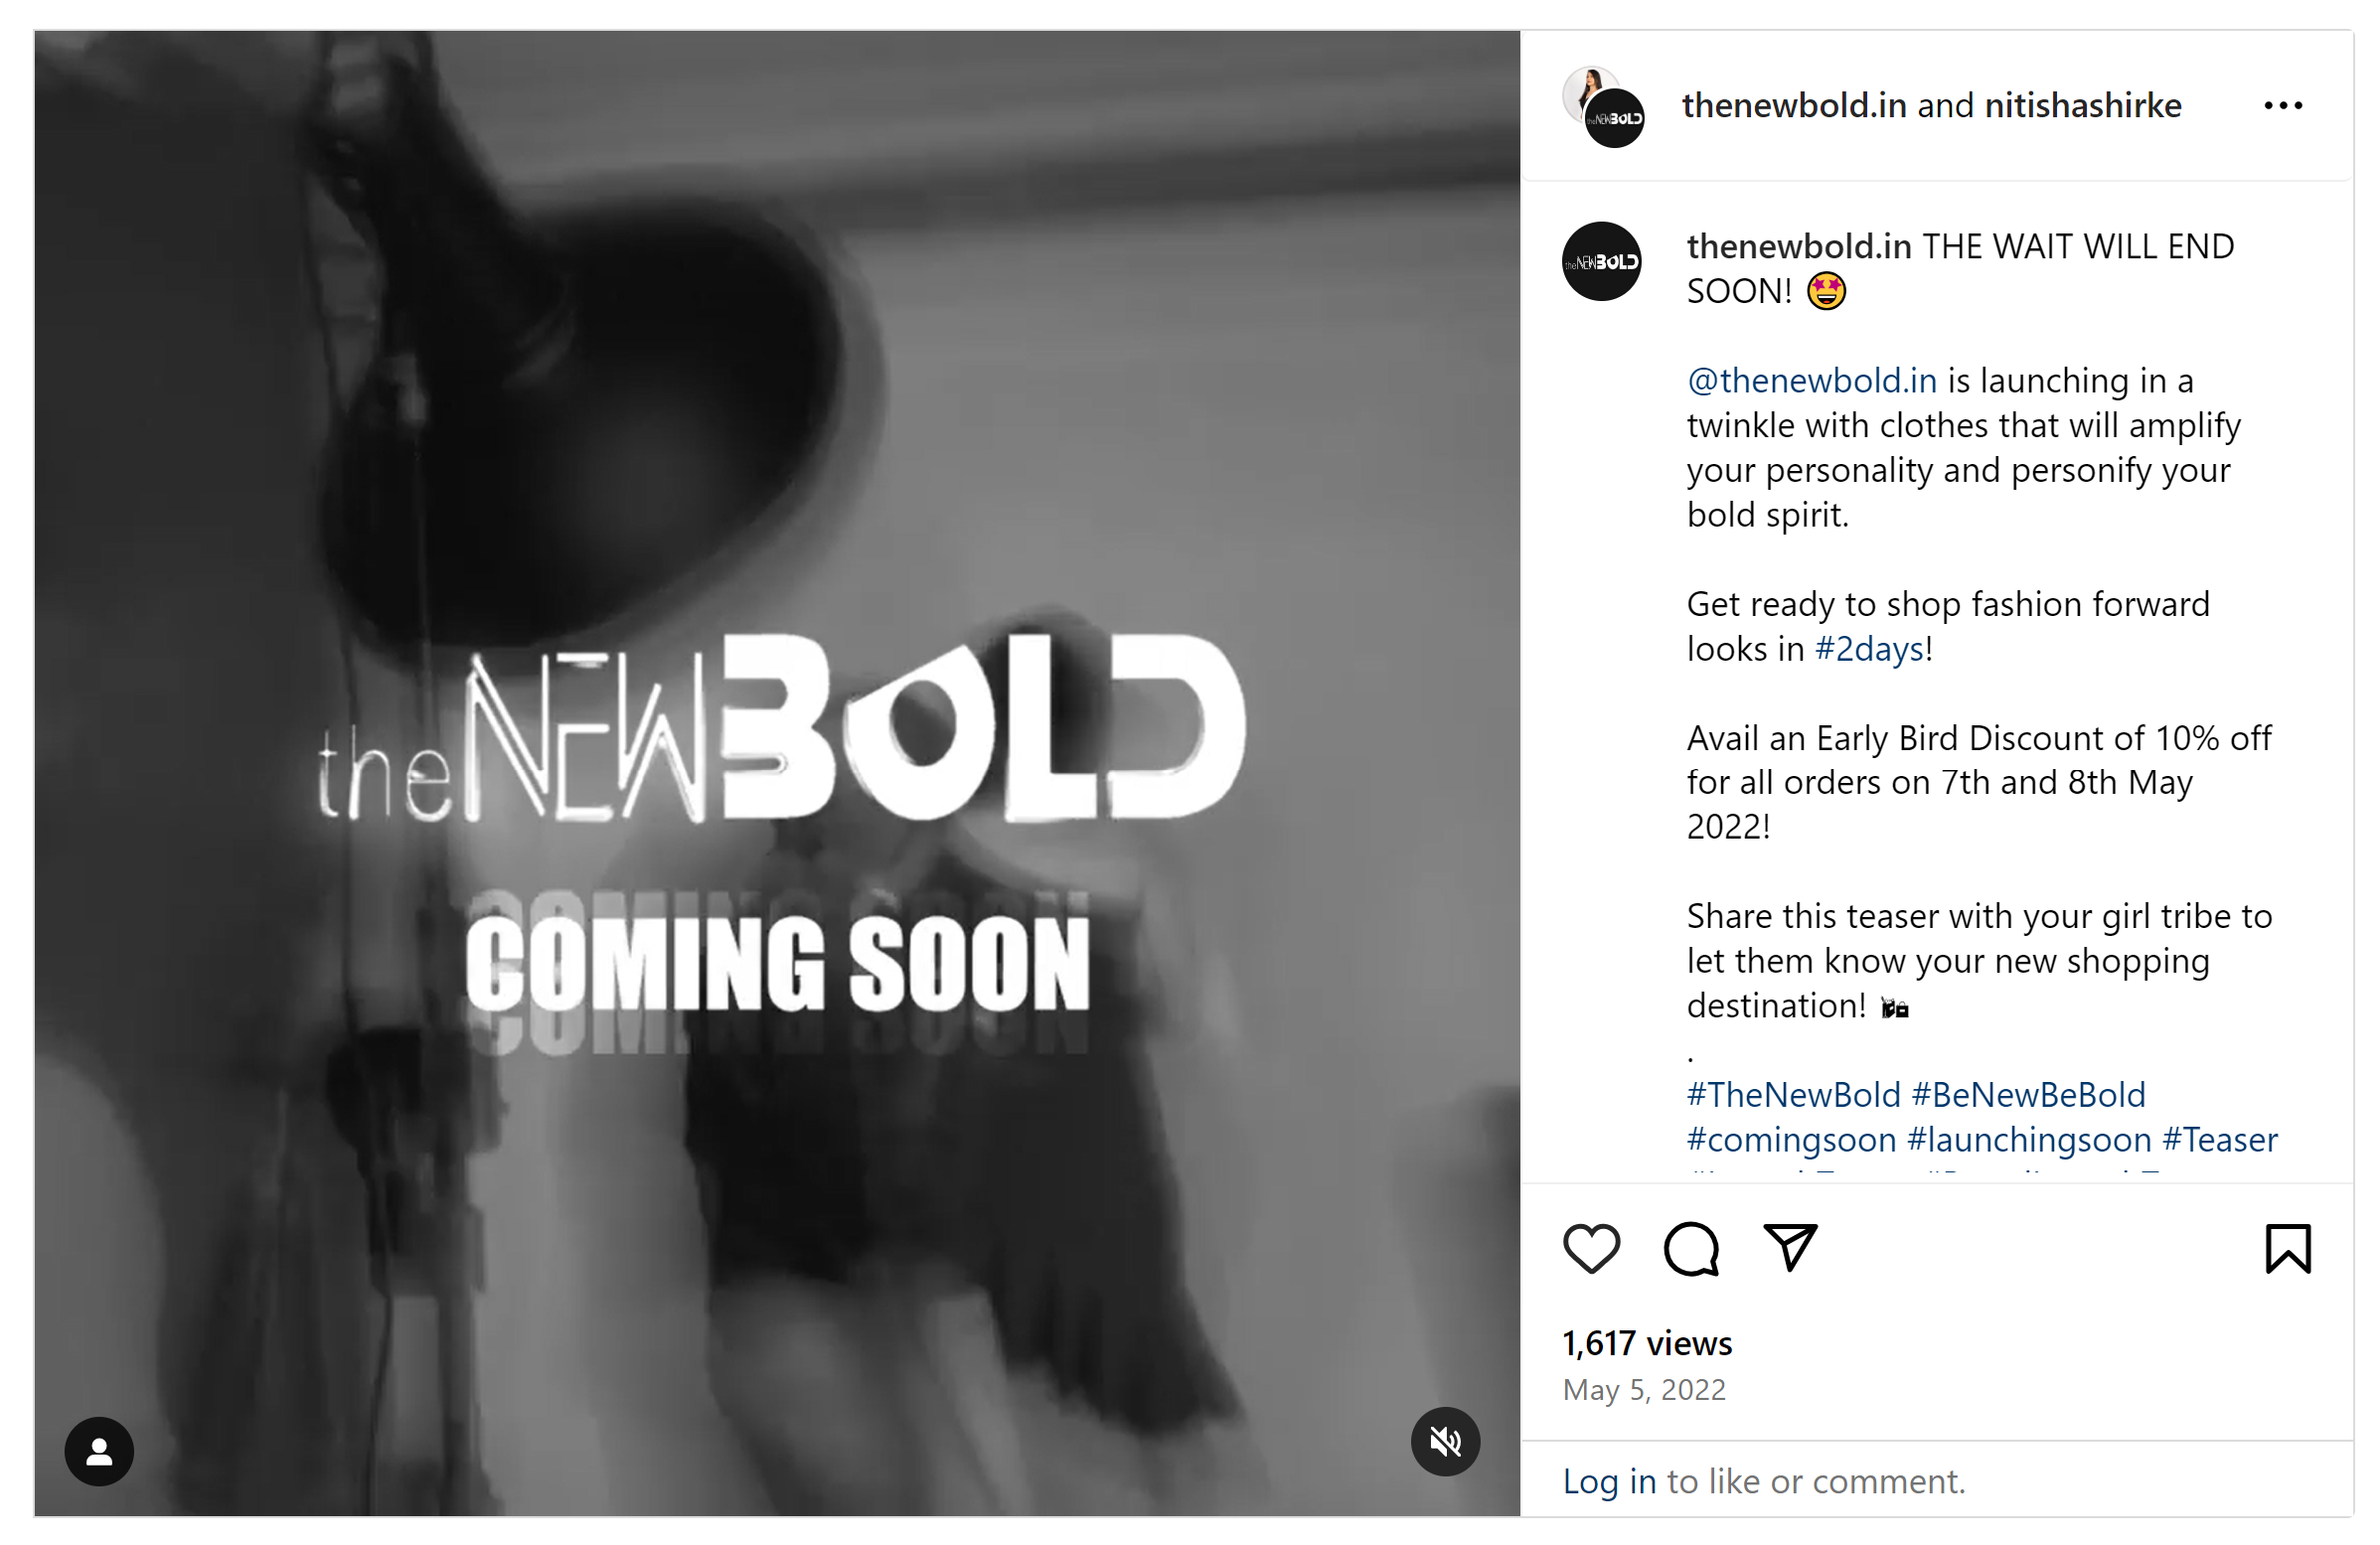 Postare de anunț de lansare a produsului pe Instagram